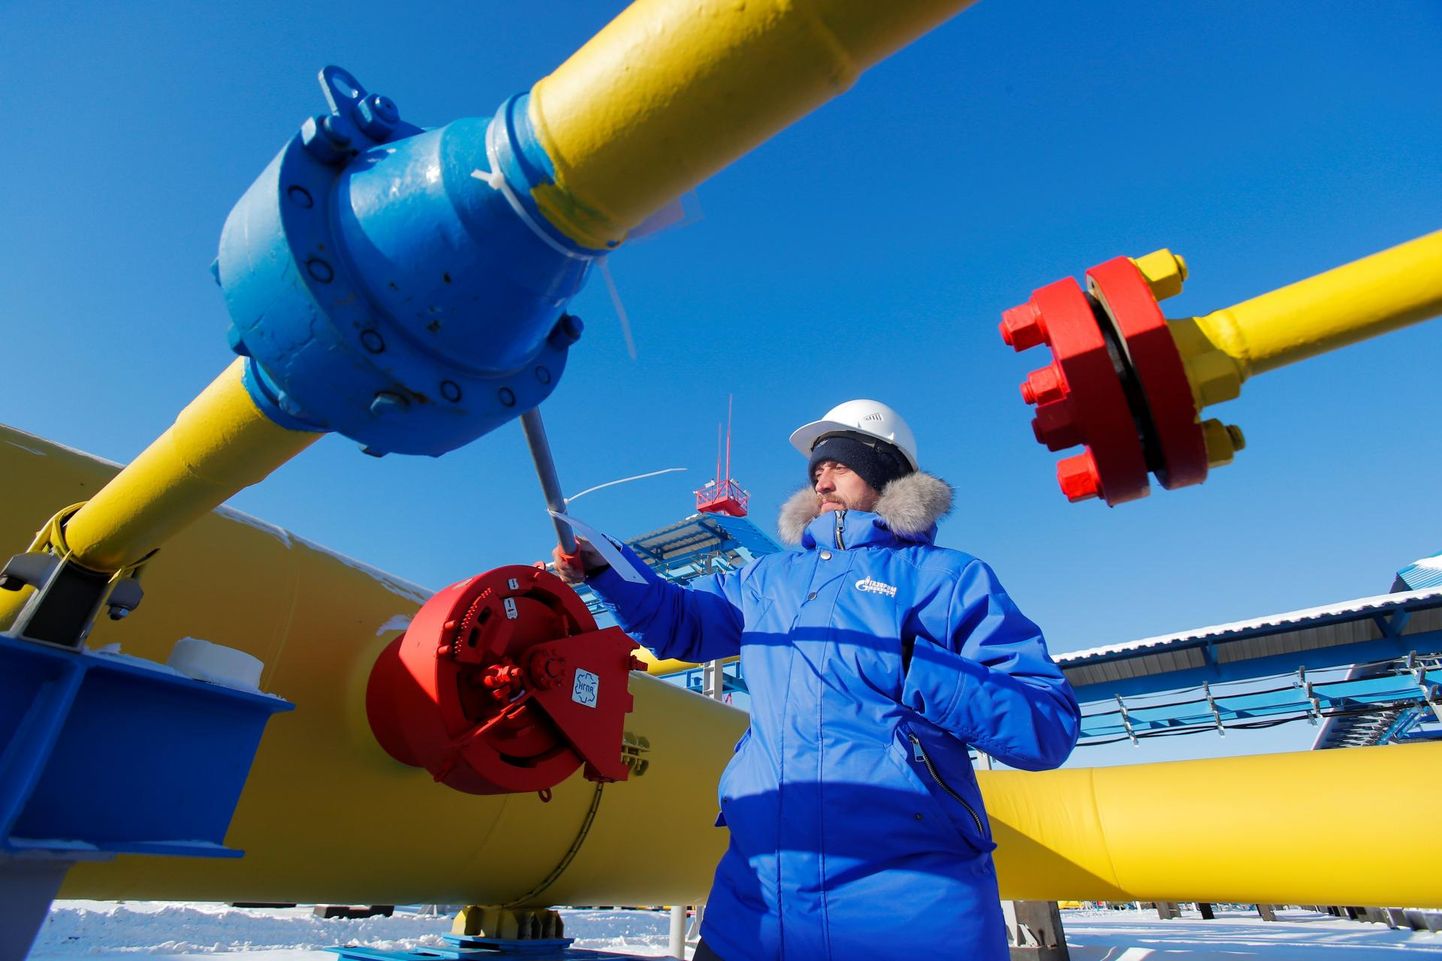 Venemaa riiklikule energiafirmale Gazprom kuuluva Venemaalt Hiinasse lookleva gaasitrassi Сила Сибири (Siberi Jõud) kompressorjaamas Amuuri oblastis Svobodnõi linnas olid vähemalt 2019. aastal seadmed Ukraina lipu värvides. 